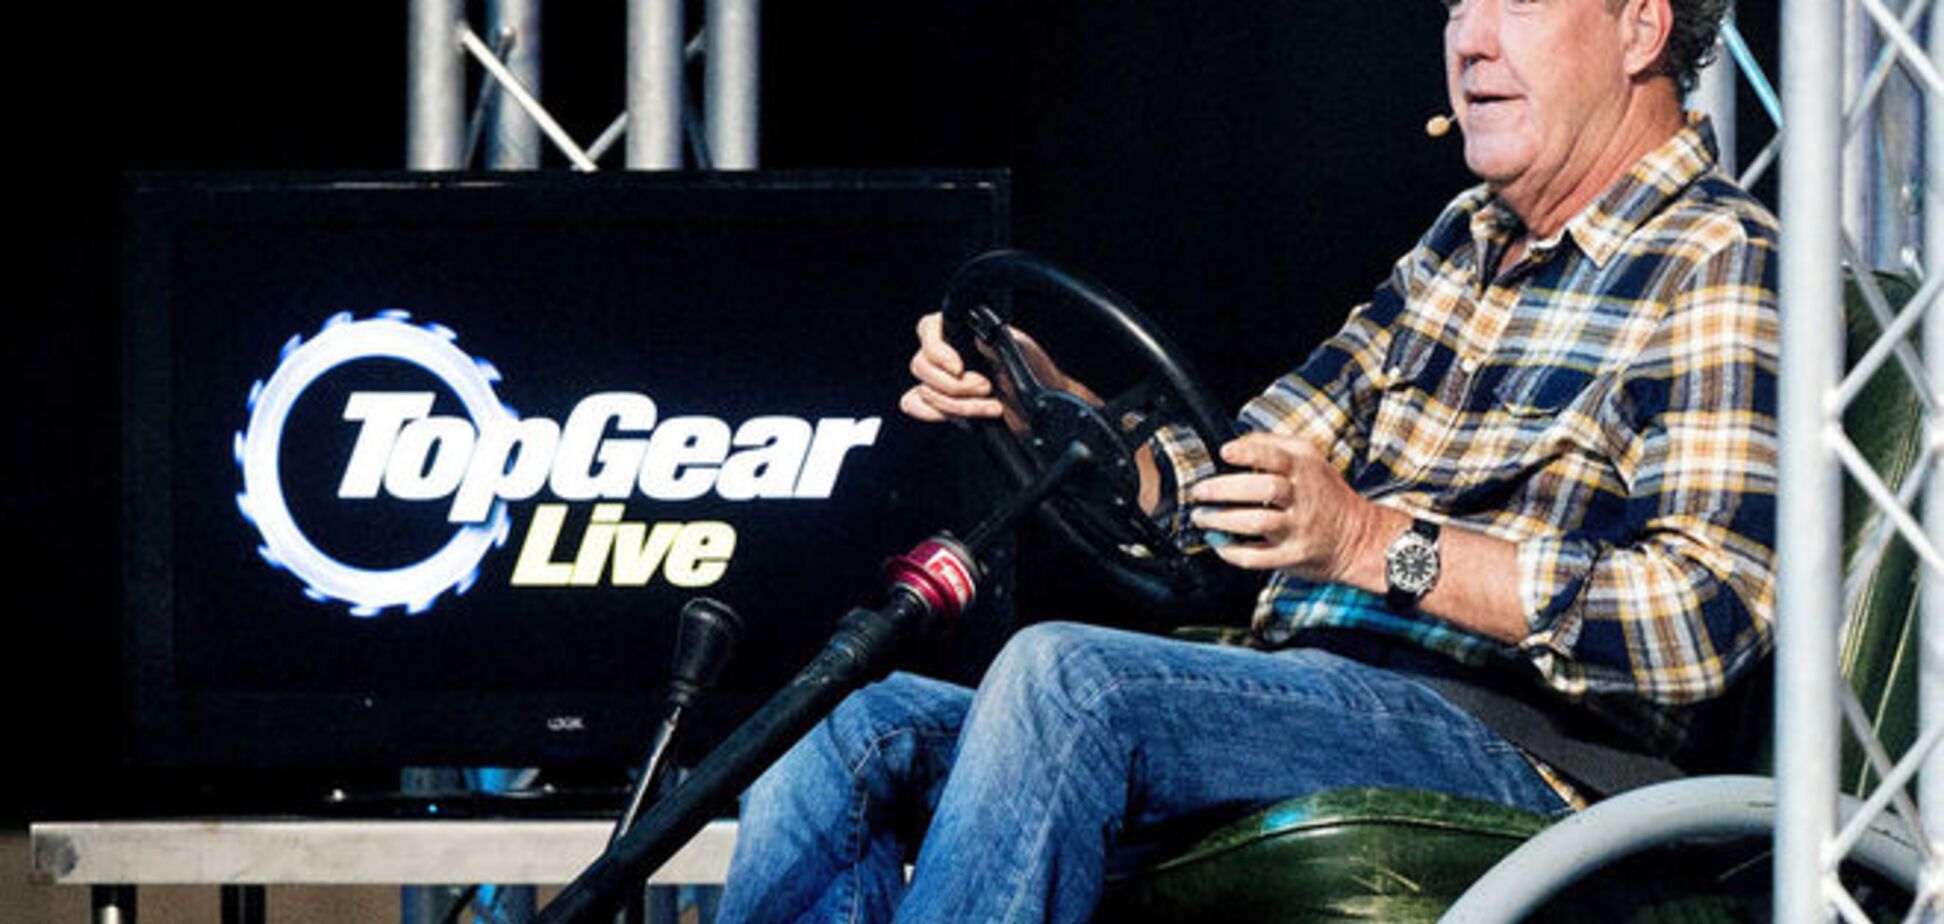 Капризы звезды: ведущий Top Gear на гастролях требовал элитный алкоголь